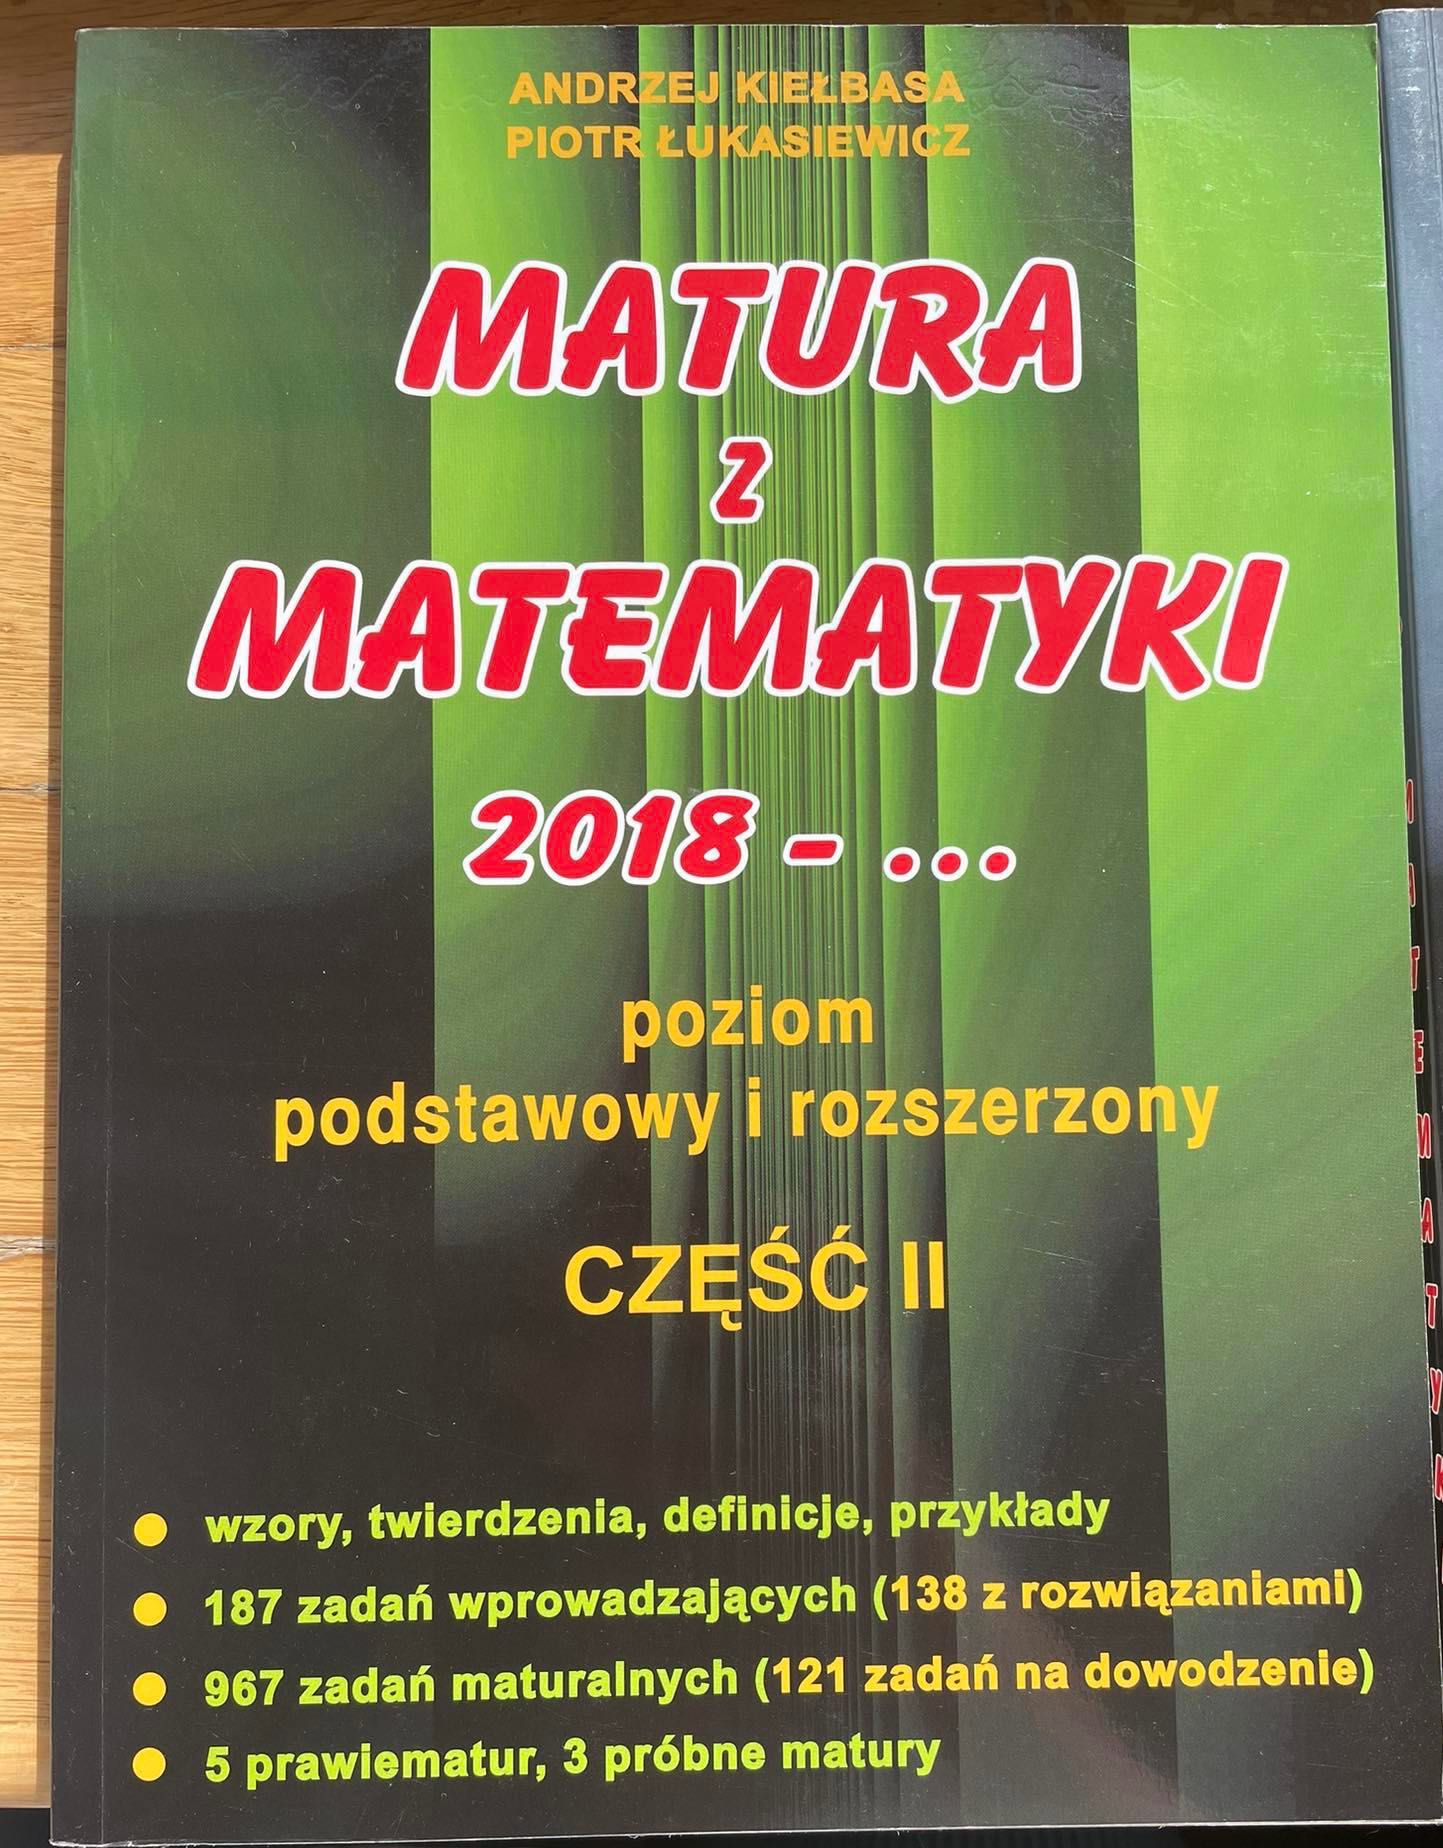 Matura z matematyki Andrzej Kiełbasa cz. II